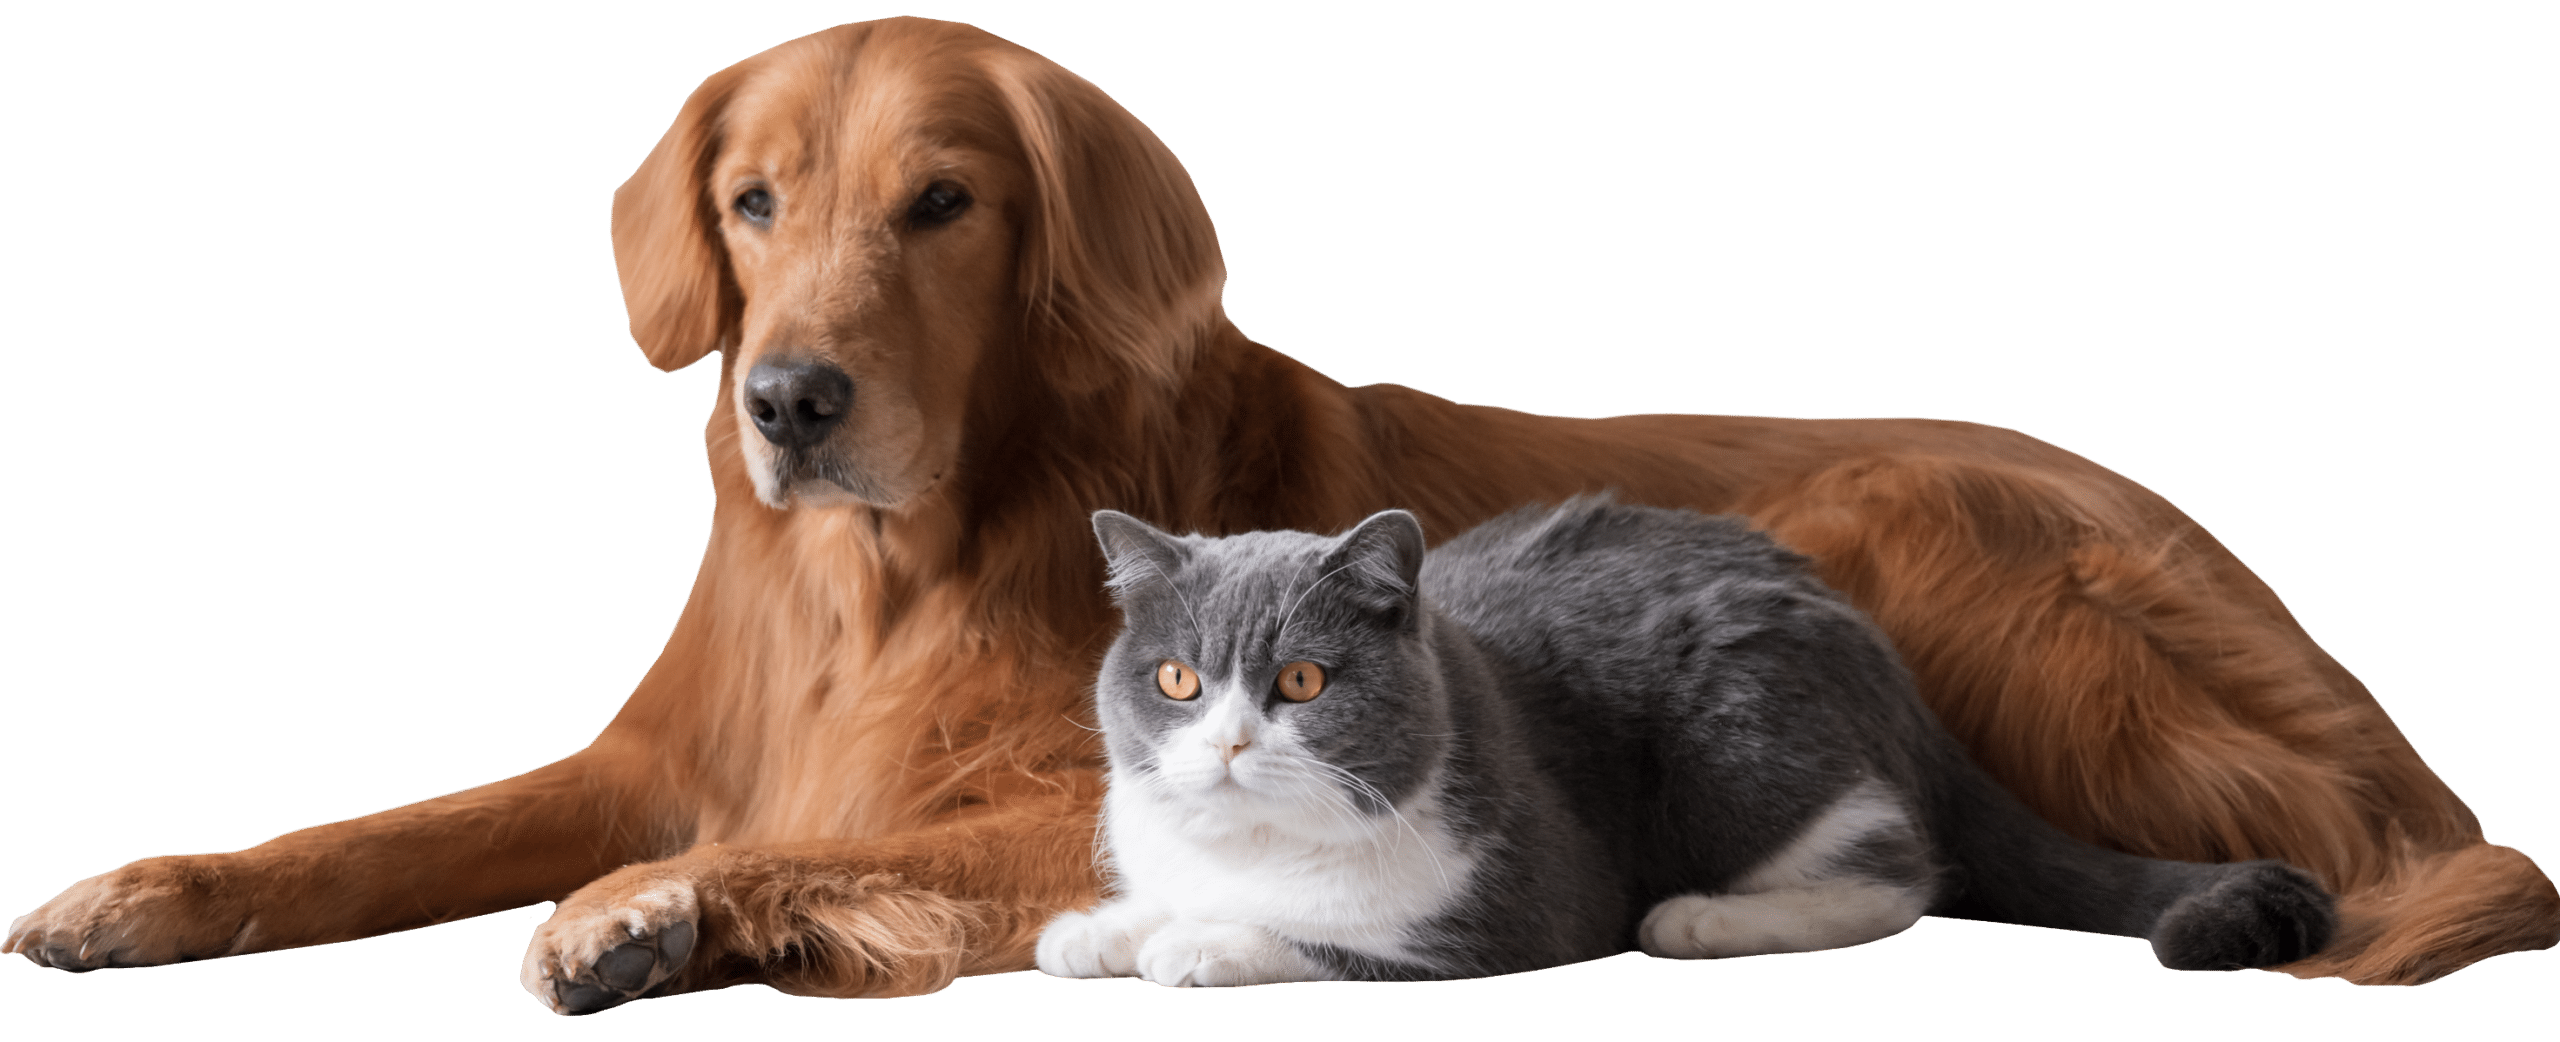 Dog and Cat Cuddles - Paradise Animal Hospital